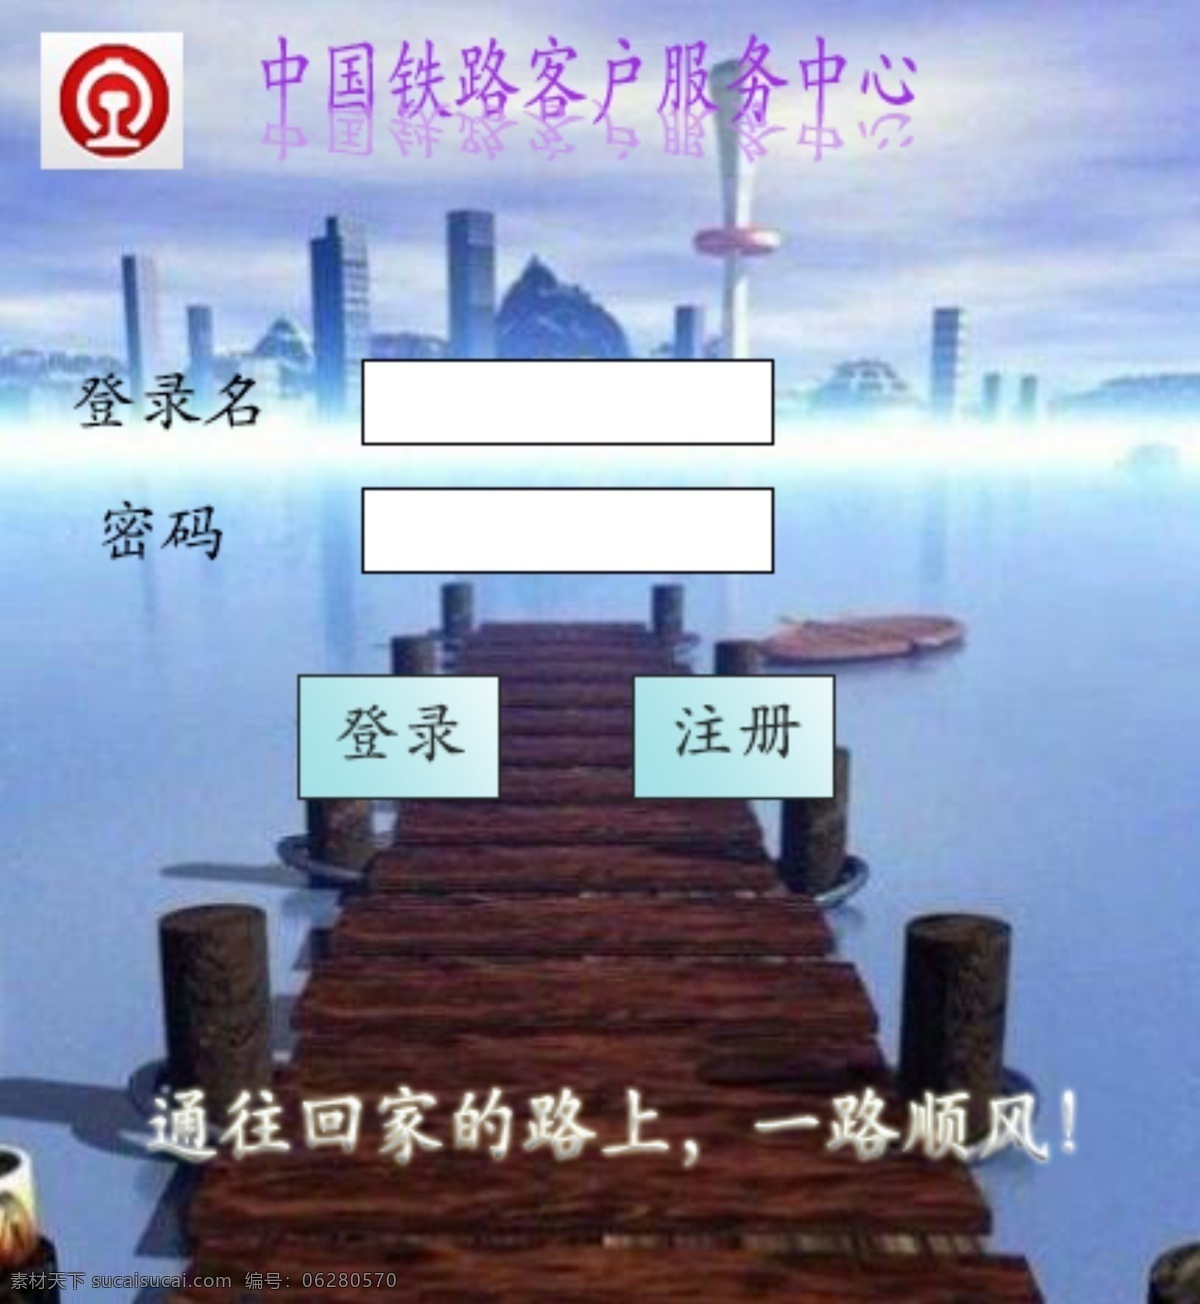 中国 铁路 登录 页面 中国铁路 网页素材 网页界面设计